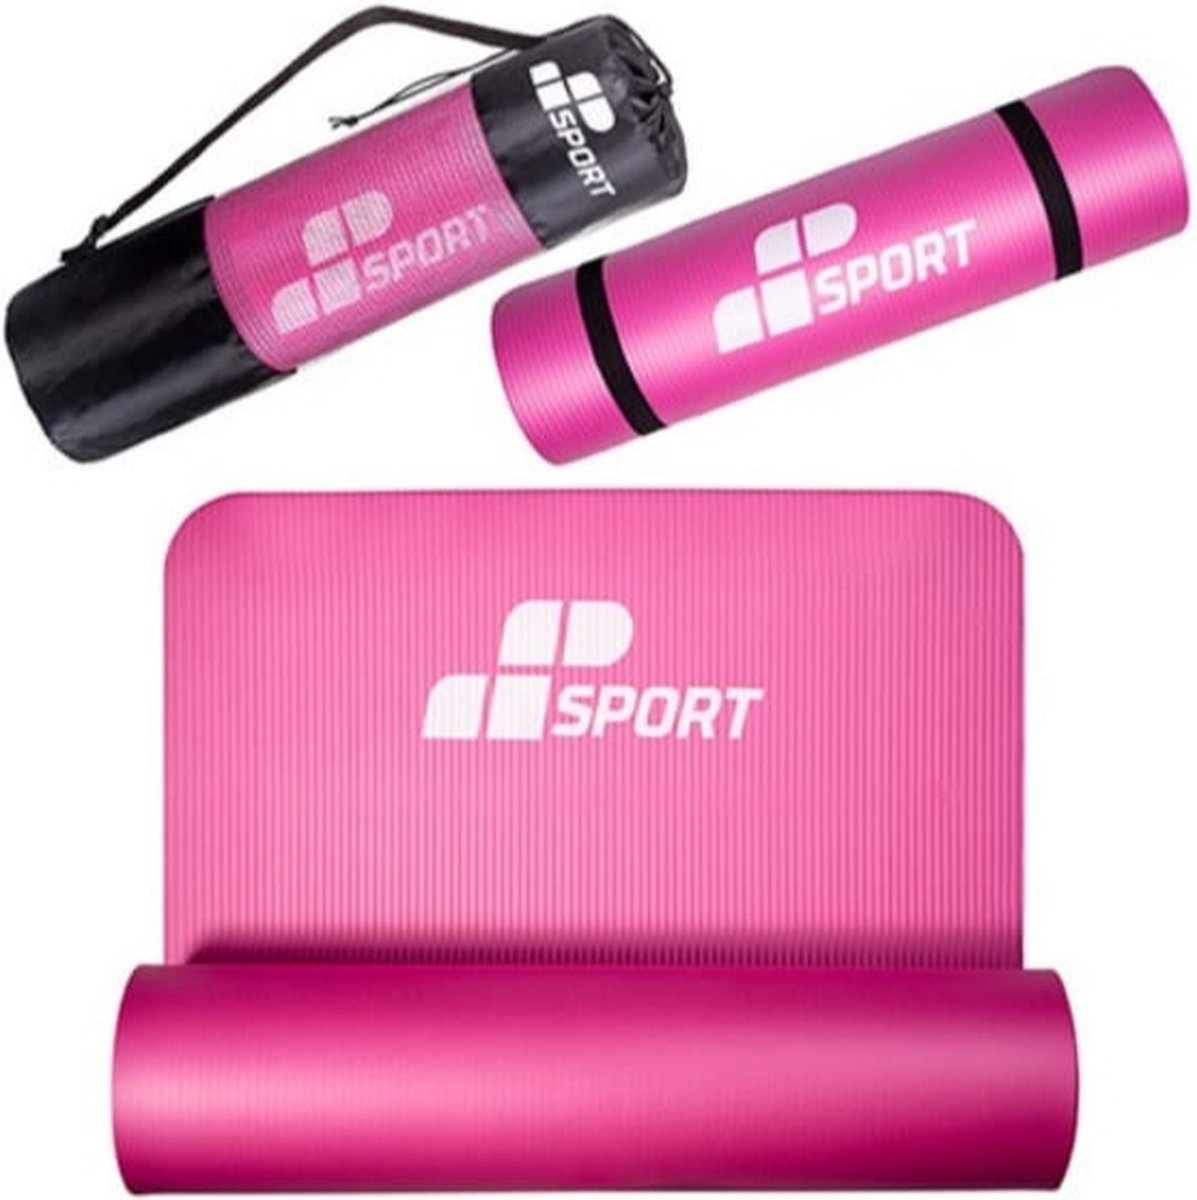 Mp sport - Yogamat - 183x61x1cm - Roze